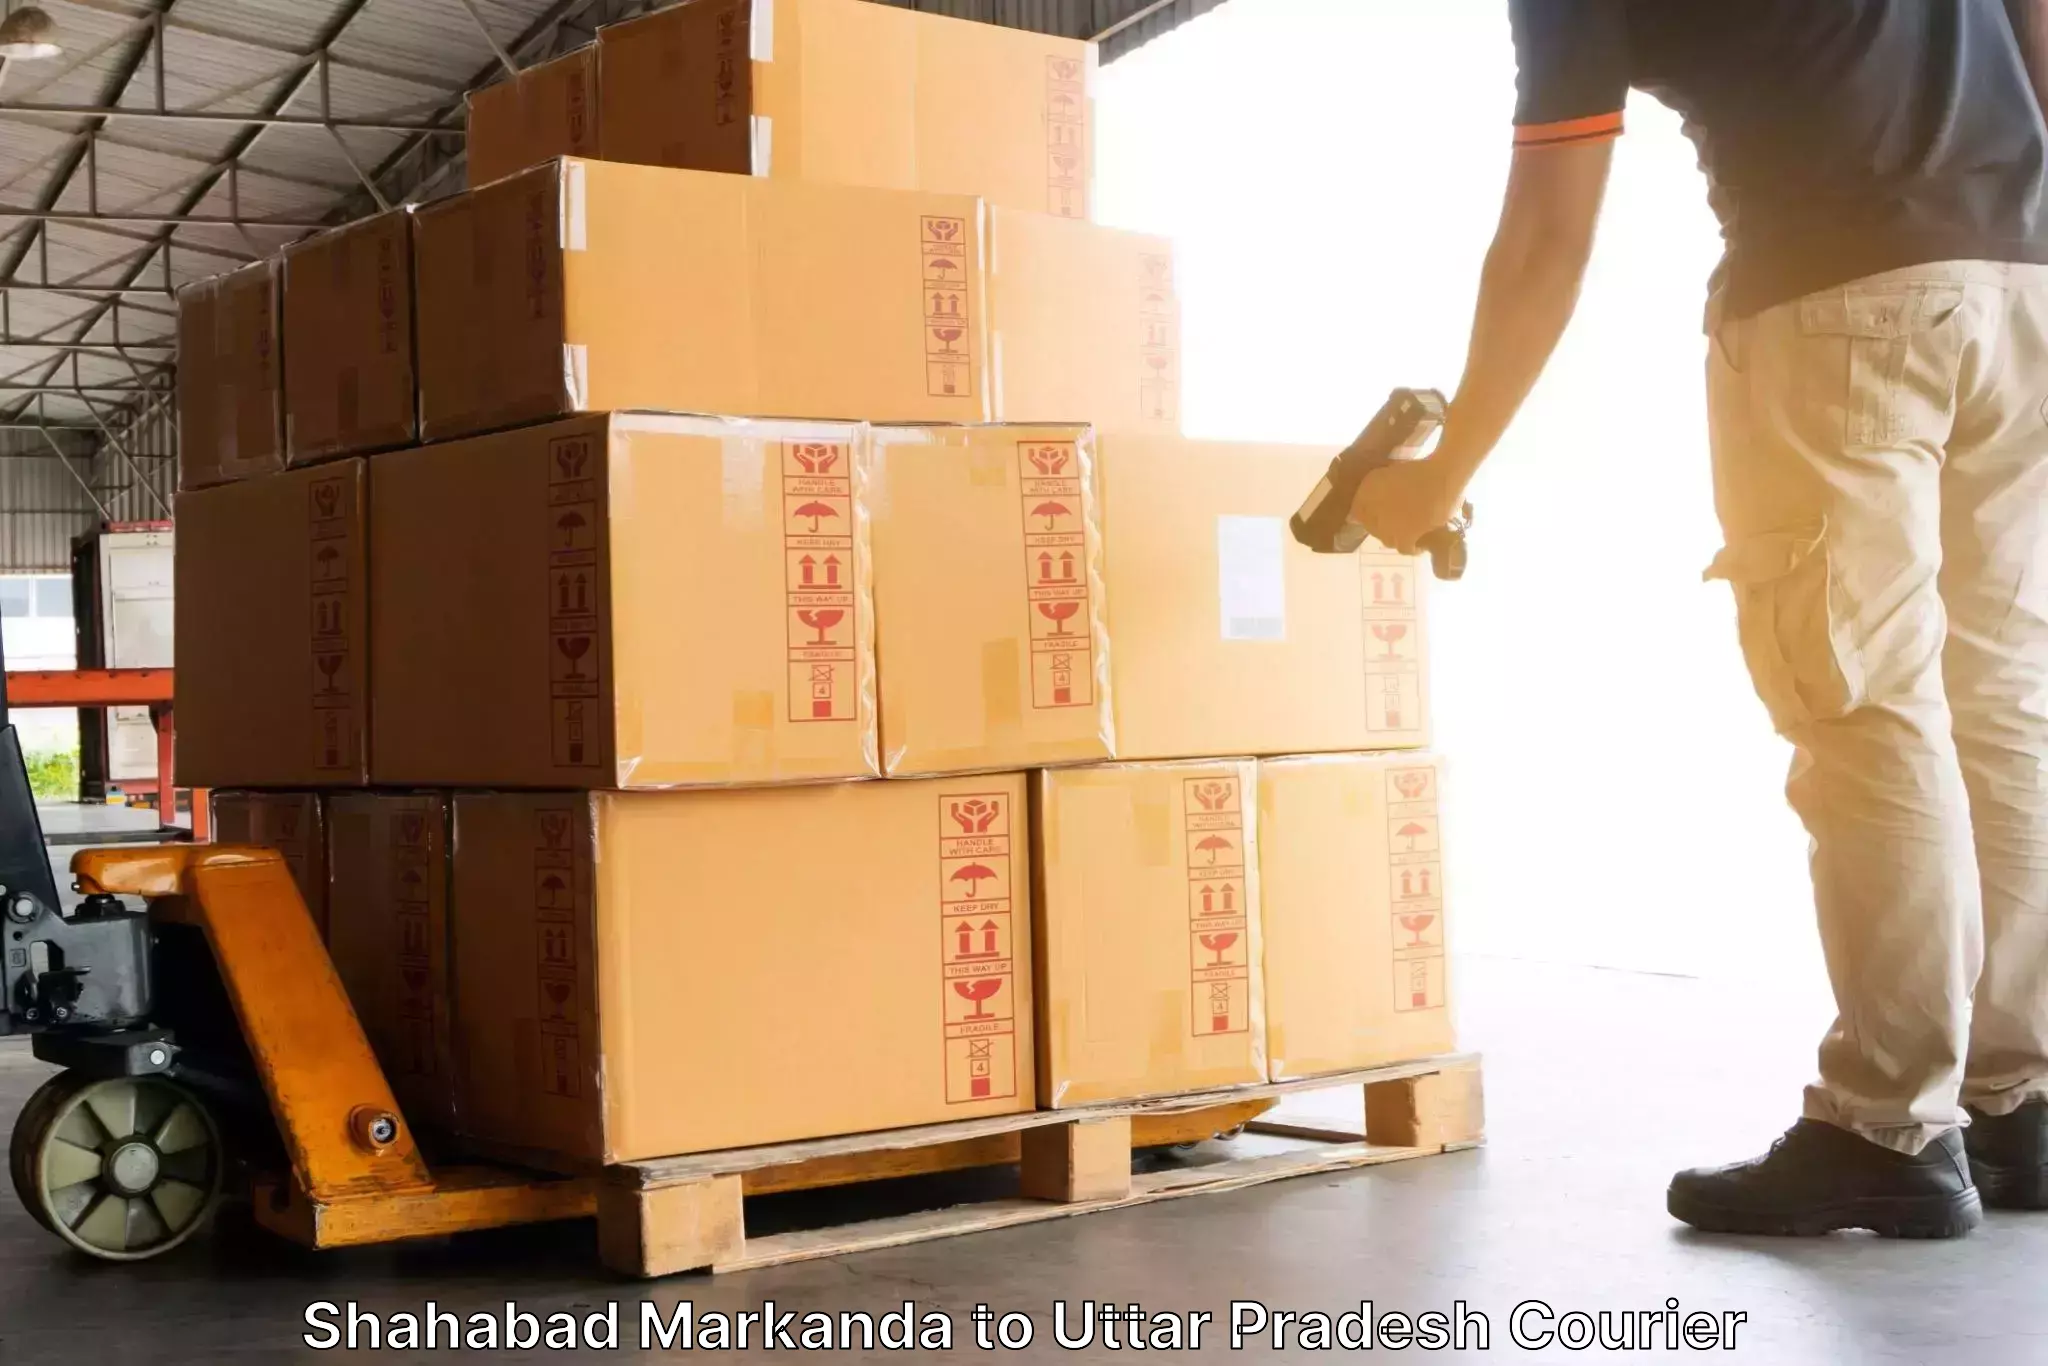 Multi-national courier services Shahabad Markanda to Uttar Pradesh